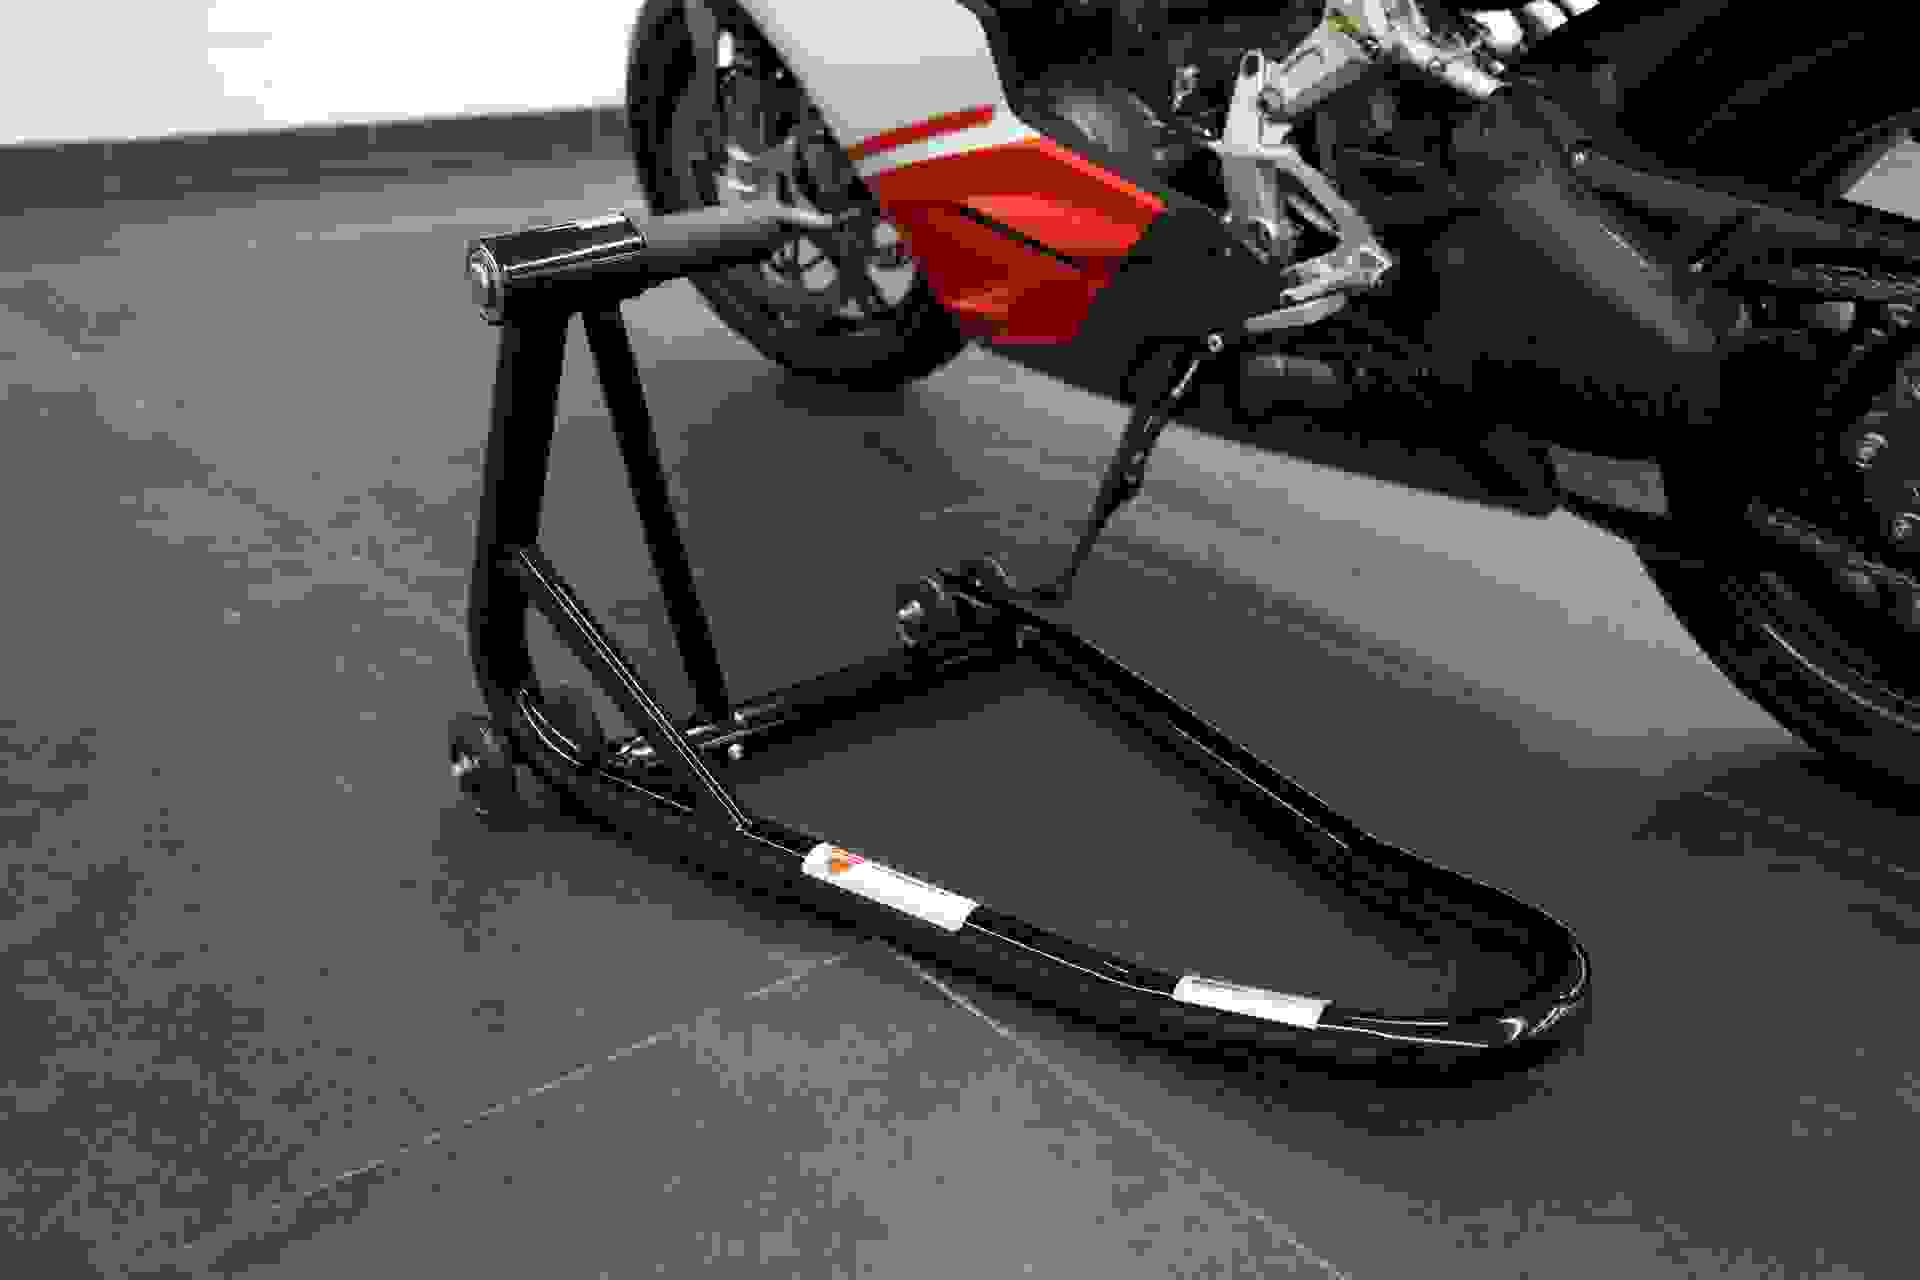 Ducati Superleggera Photo 1ff7258a-62db-4a99-81be-04fc2ca7f8f0.jpg